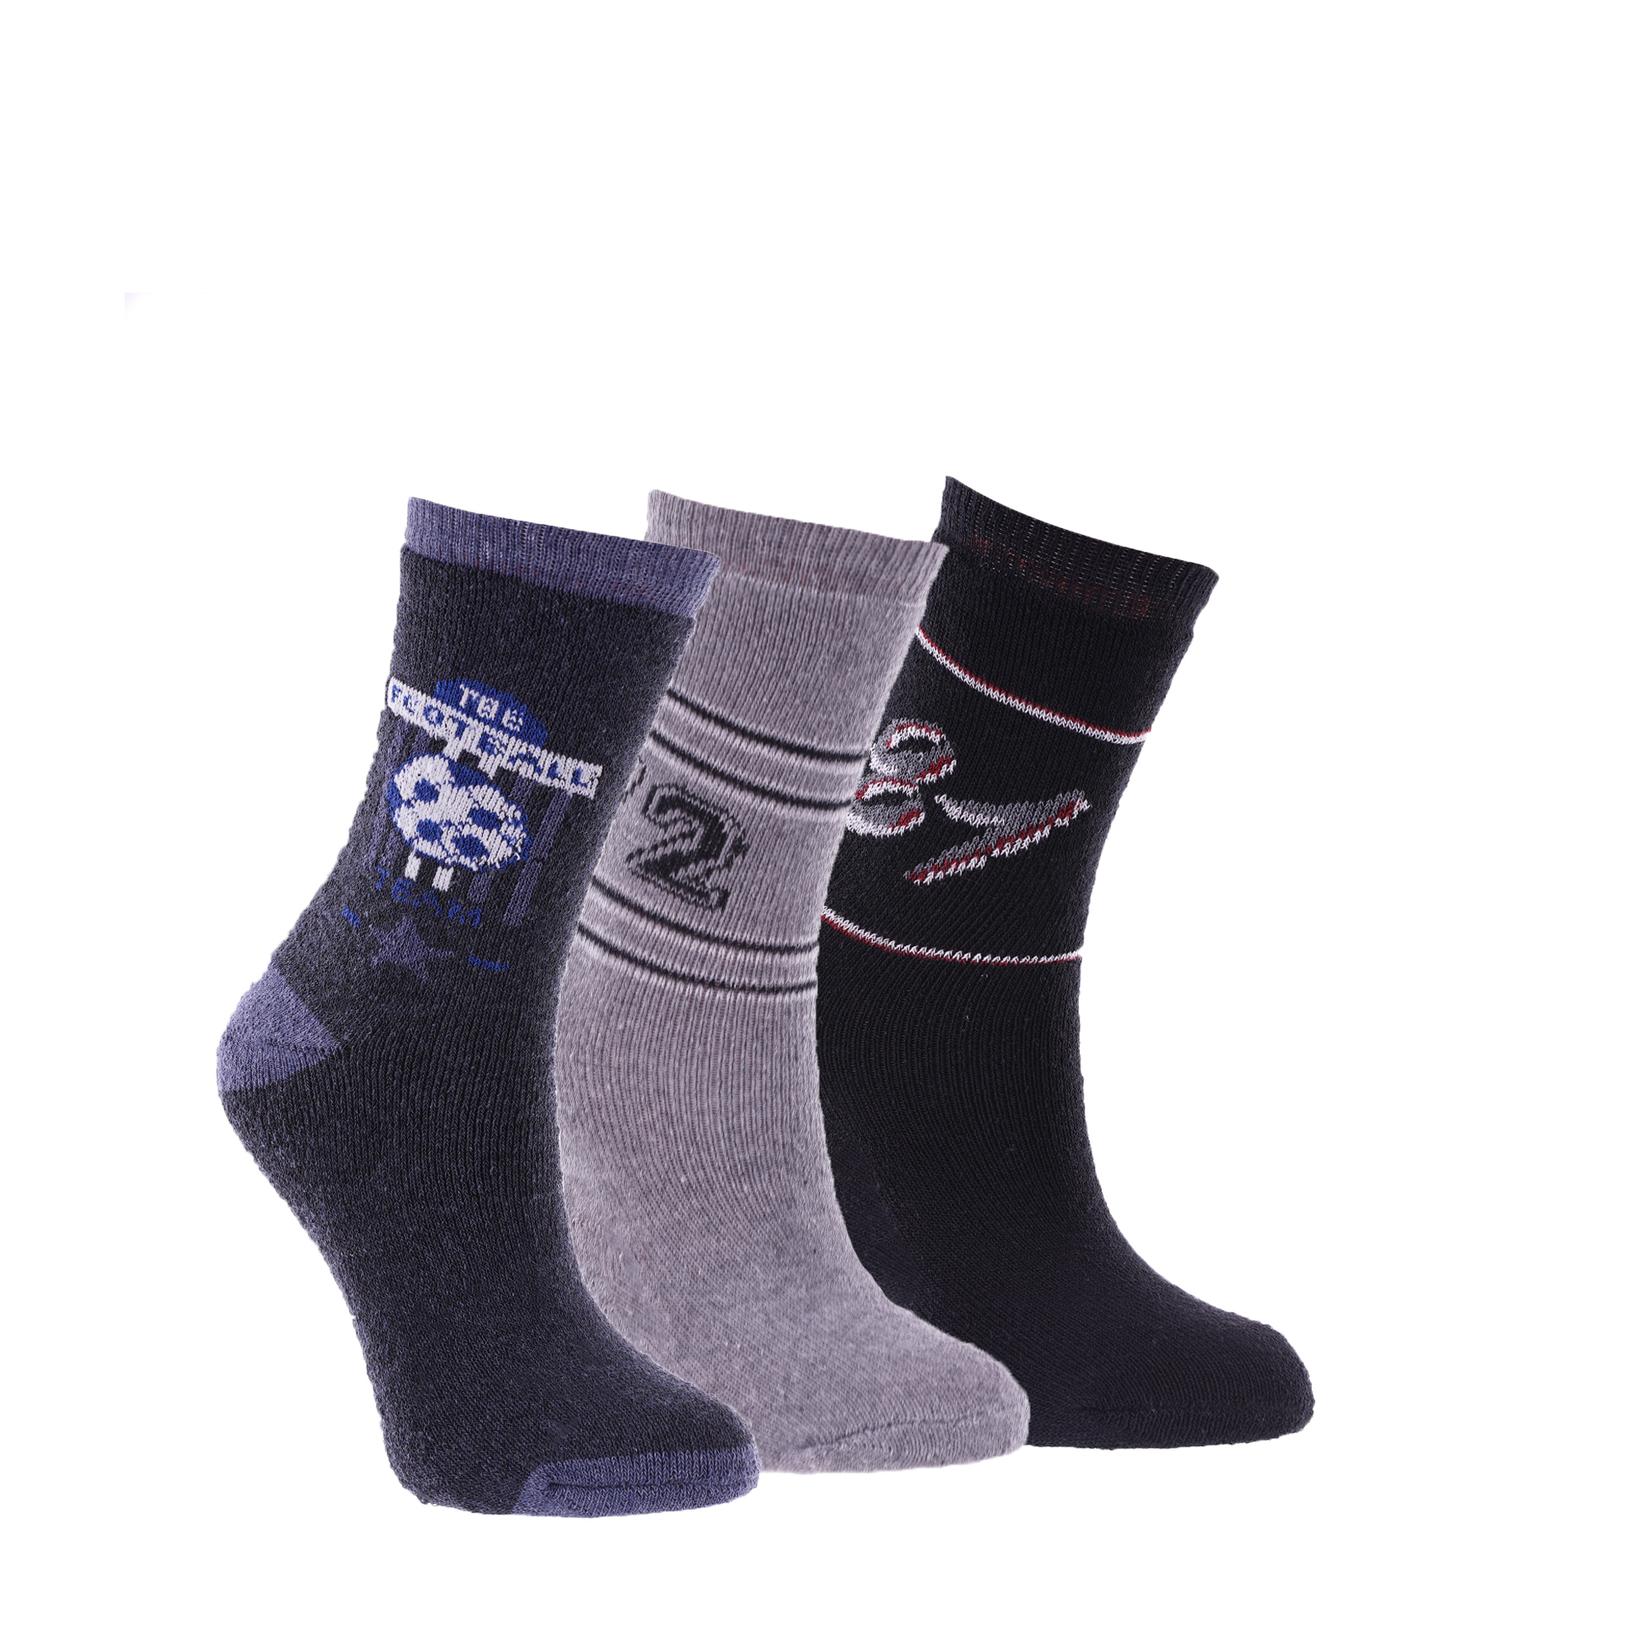 Selected image for MILANO SOCKS Dečije čarape  N71864, 3 para